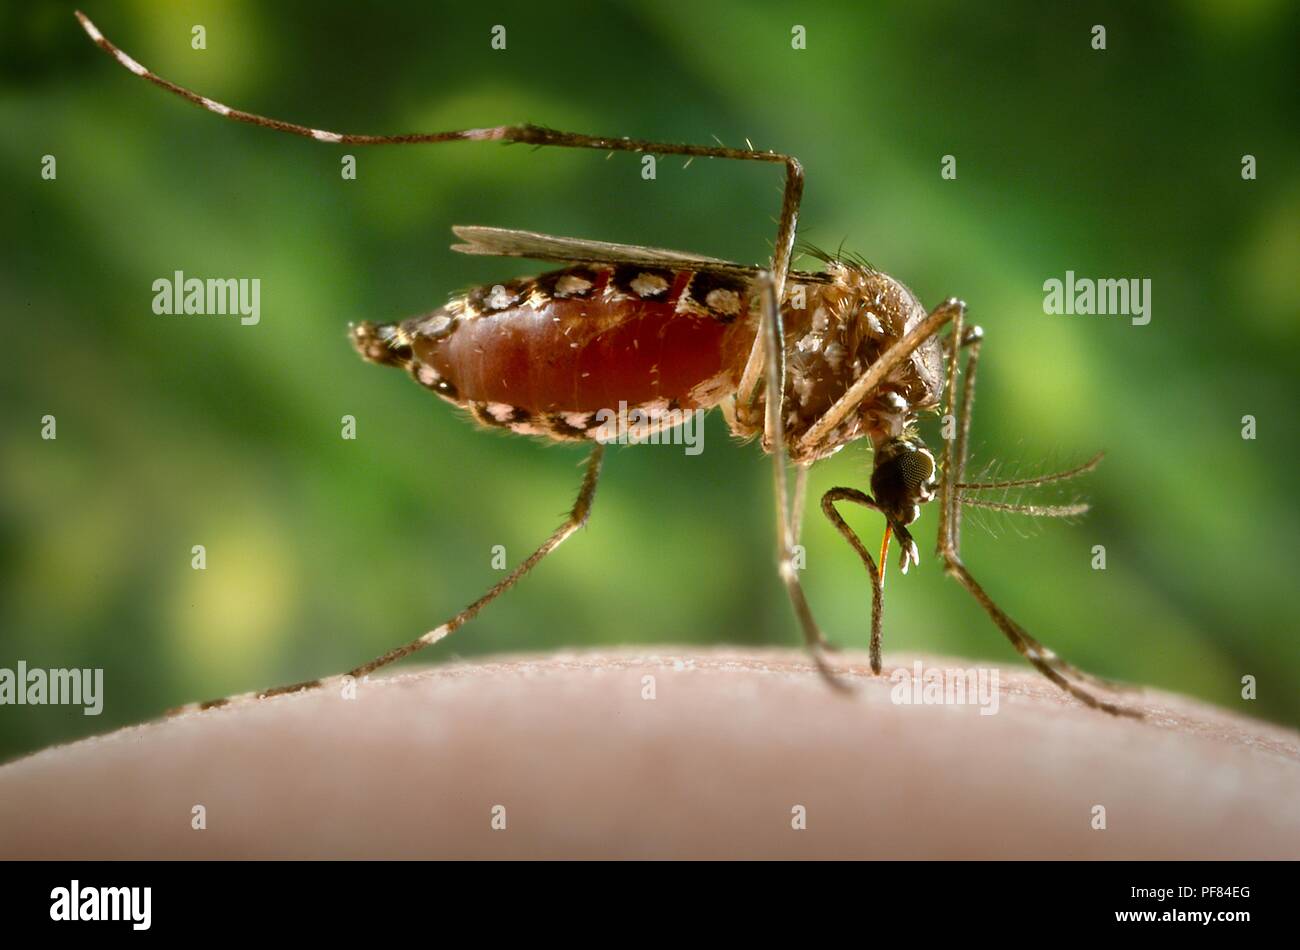 Femmine Aedes aegypti mosquito alimentazione su una mano umana, congestioni con sangue, 2006. Immagine cortesia di centri per il controllo delle malattie (CDC) / James Gathany. () Foto Stock